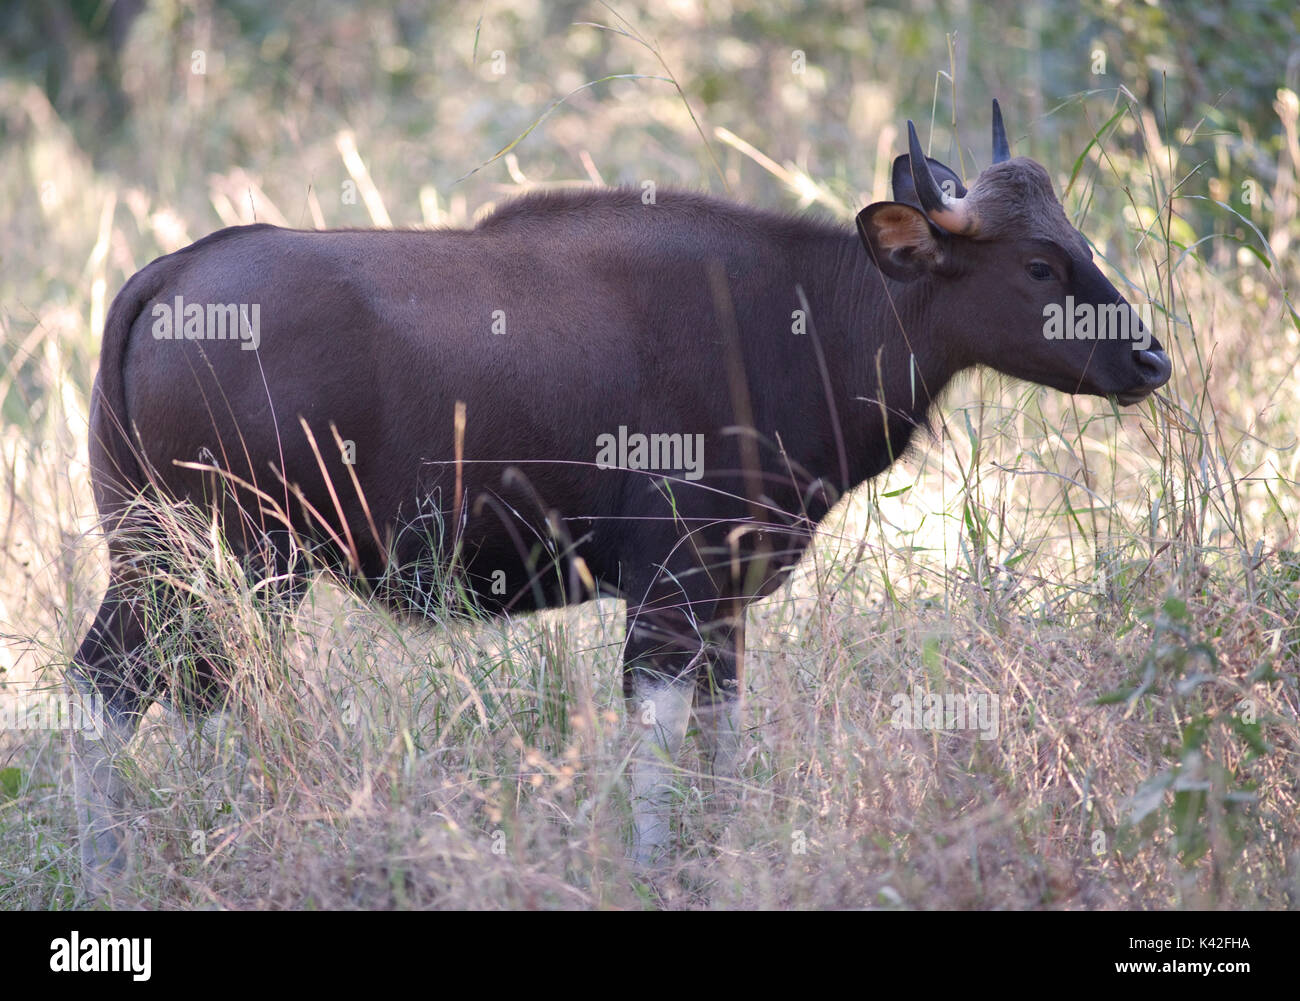 Gaur oder indische Bisons, Bos gaurus, im Gras stehen, Kanha Tiger Reserve, Nationalpark, Madhya Pradesh, Indien, Gefährdete IUCN-Liste Stockfoto